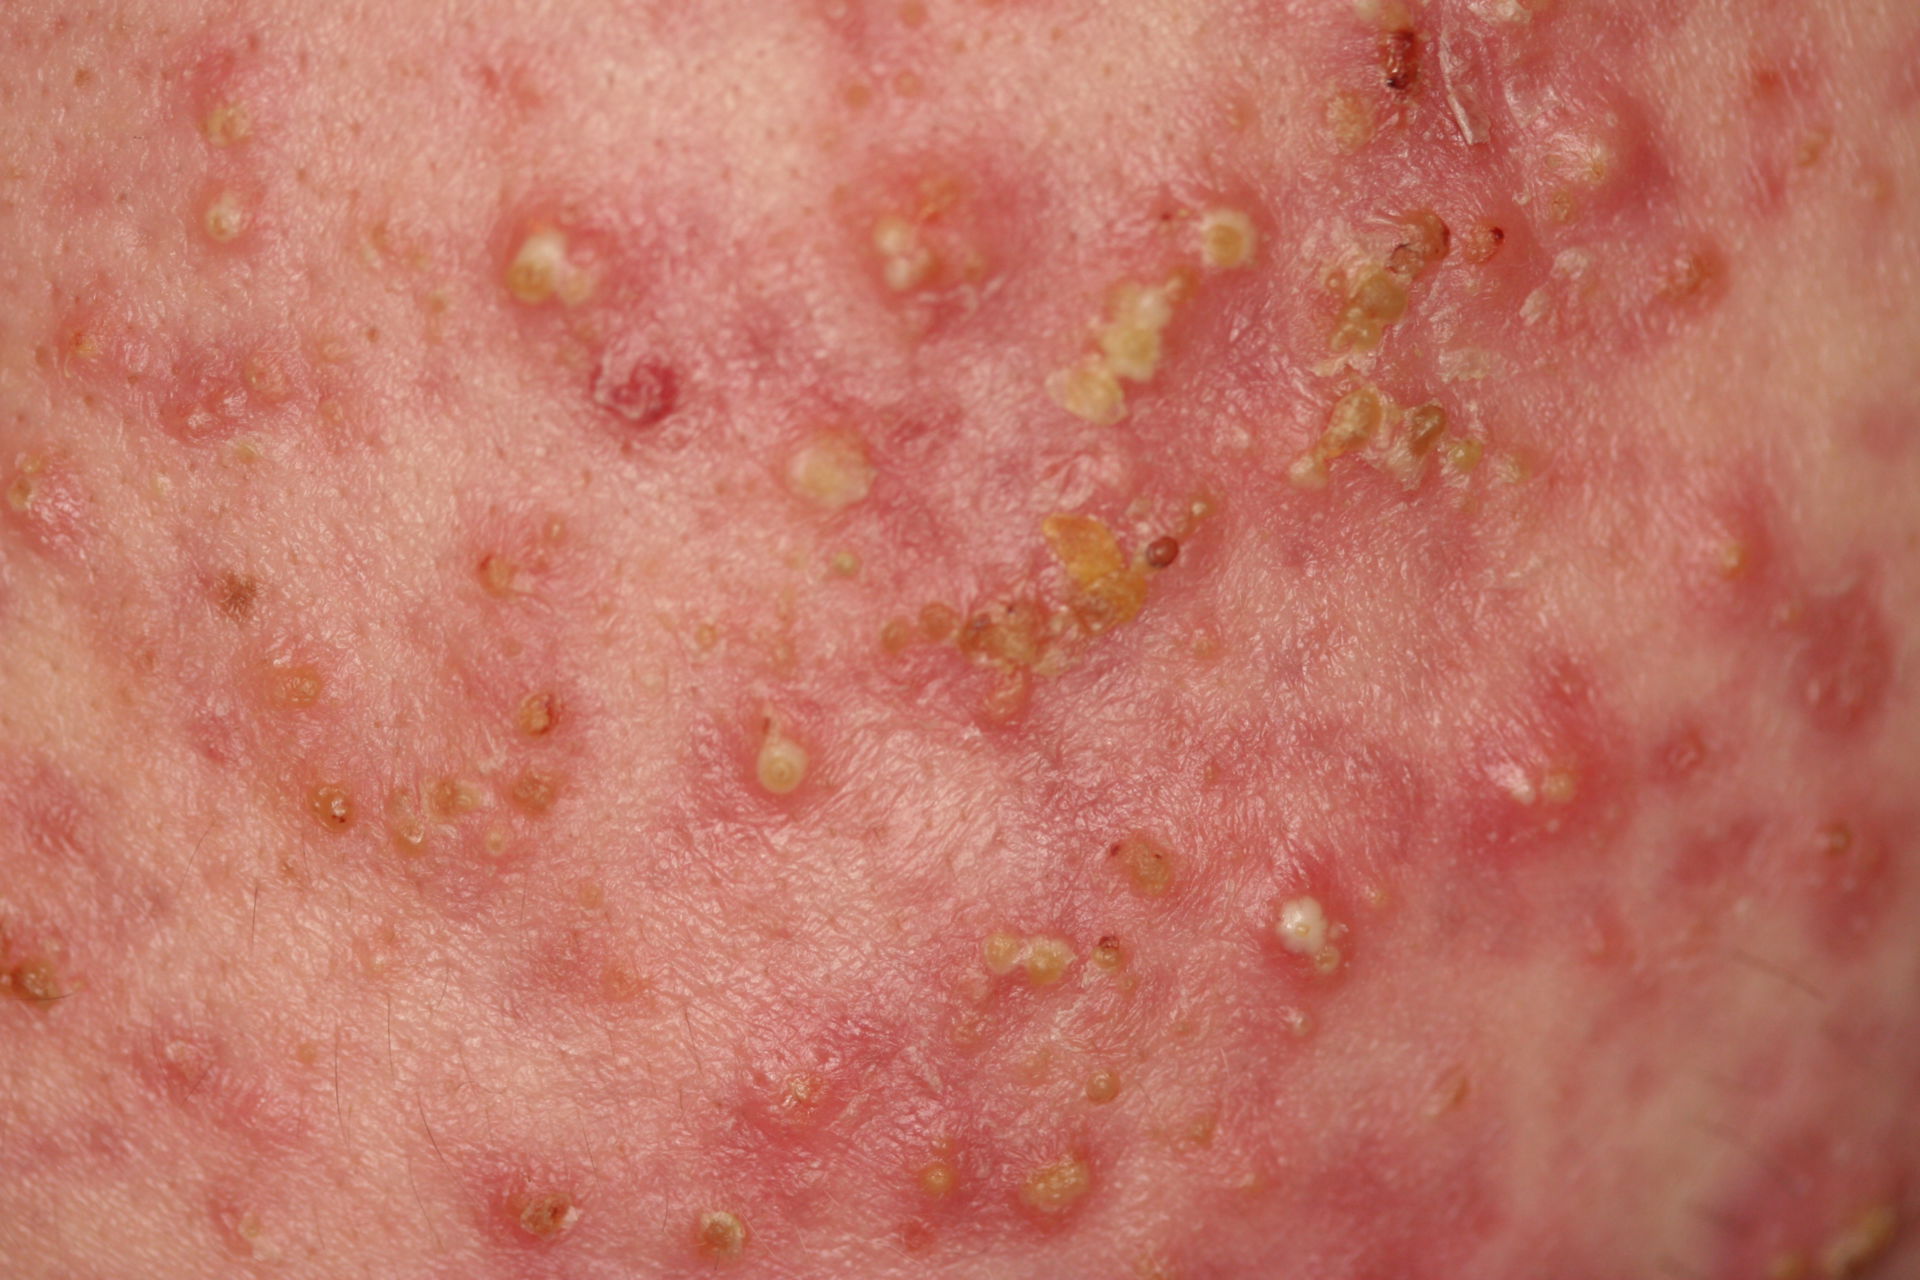 Papular and pustular acne, close up